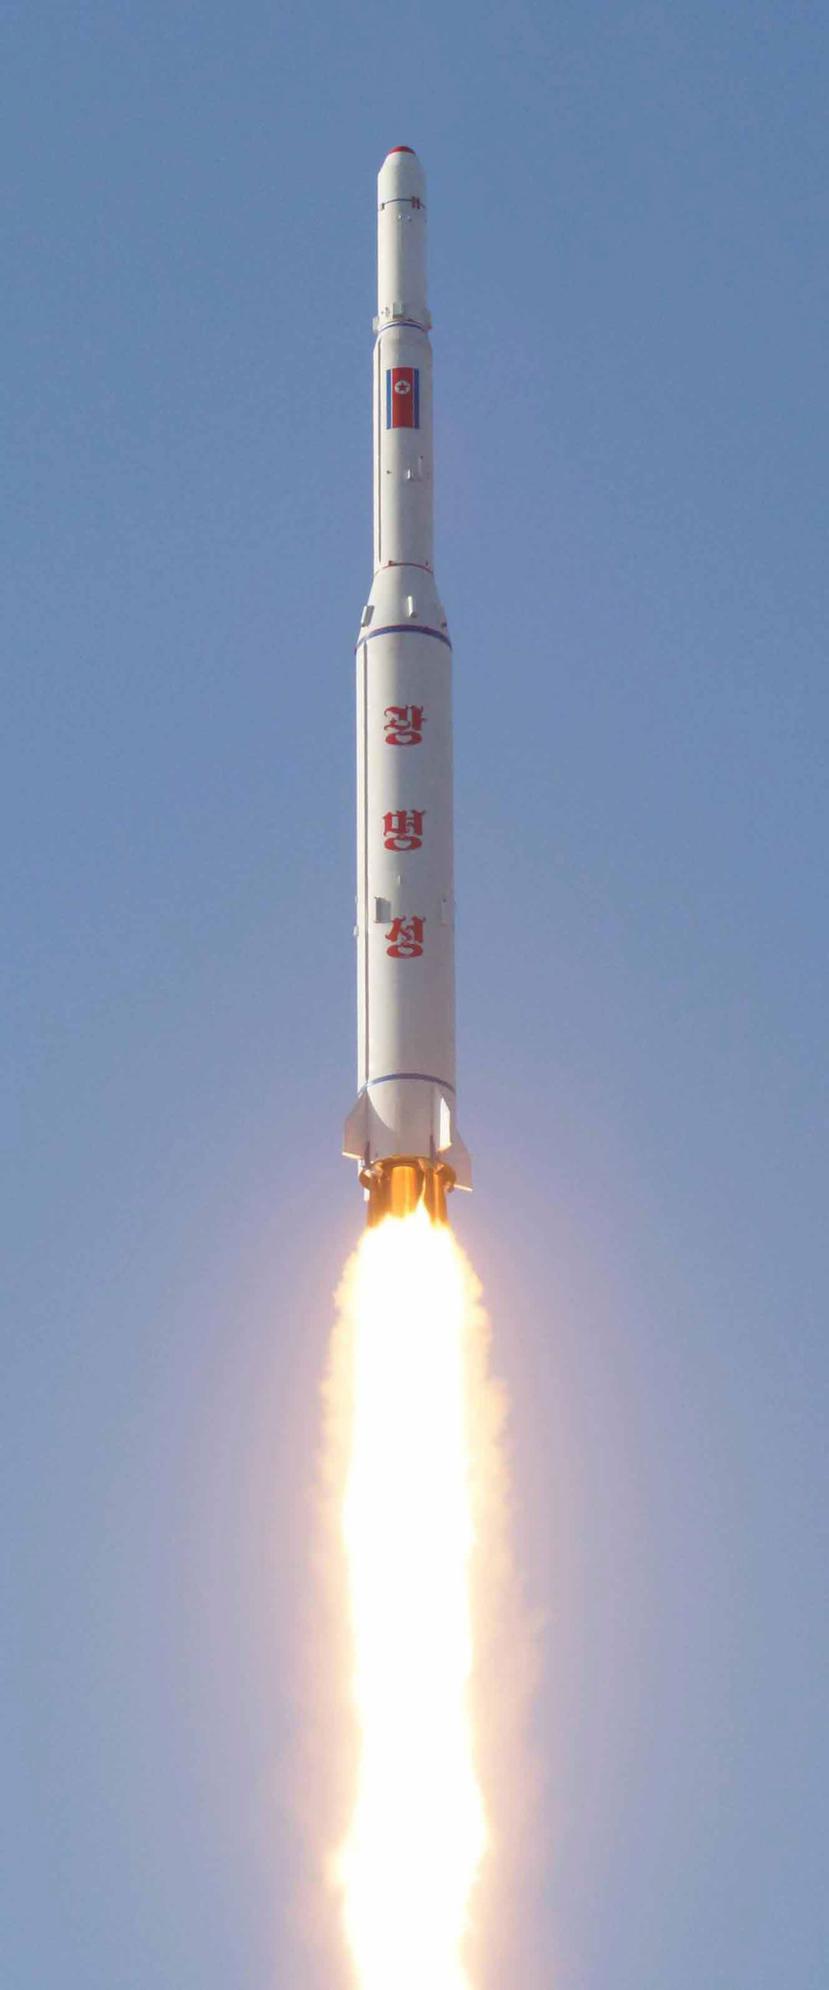 El lanzamiento se produjo poco después de la cuestionada afirmación norcoreana sobre que el país habría probado una bomba de hidrógeno.  (EFE)